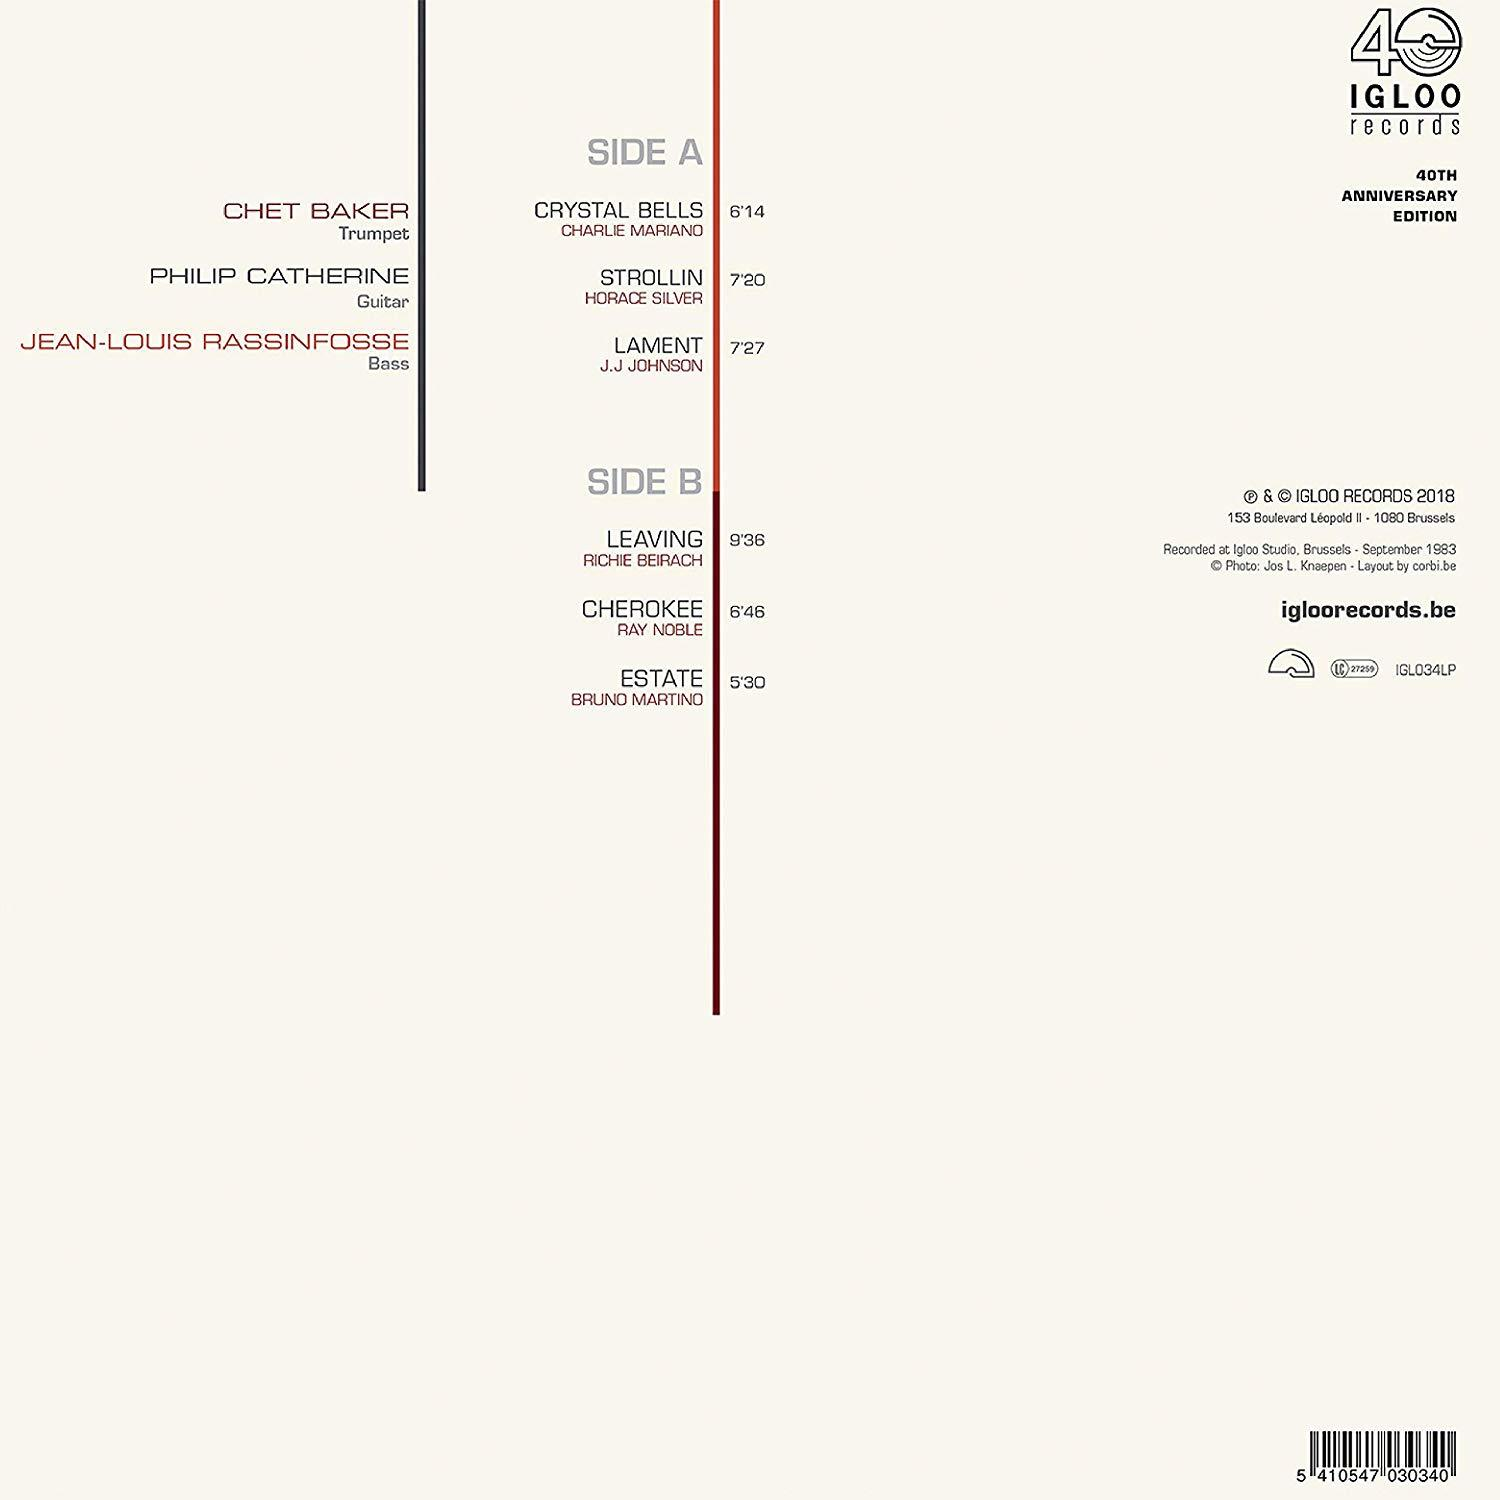 Chet Baker, Philip - (Vinyl) Bells (LP) Catherine, - Jean-louis Crystal Rassinfosse